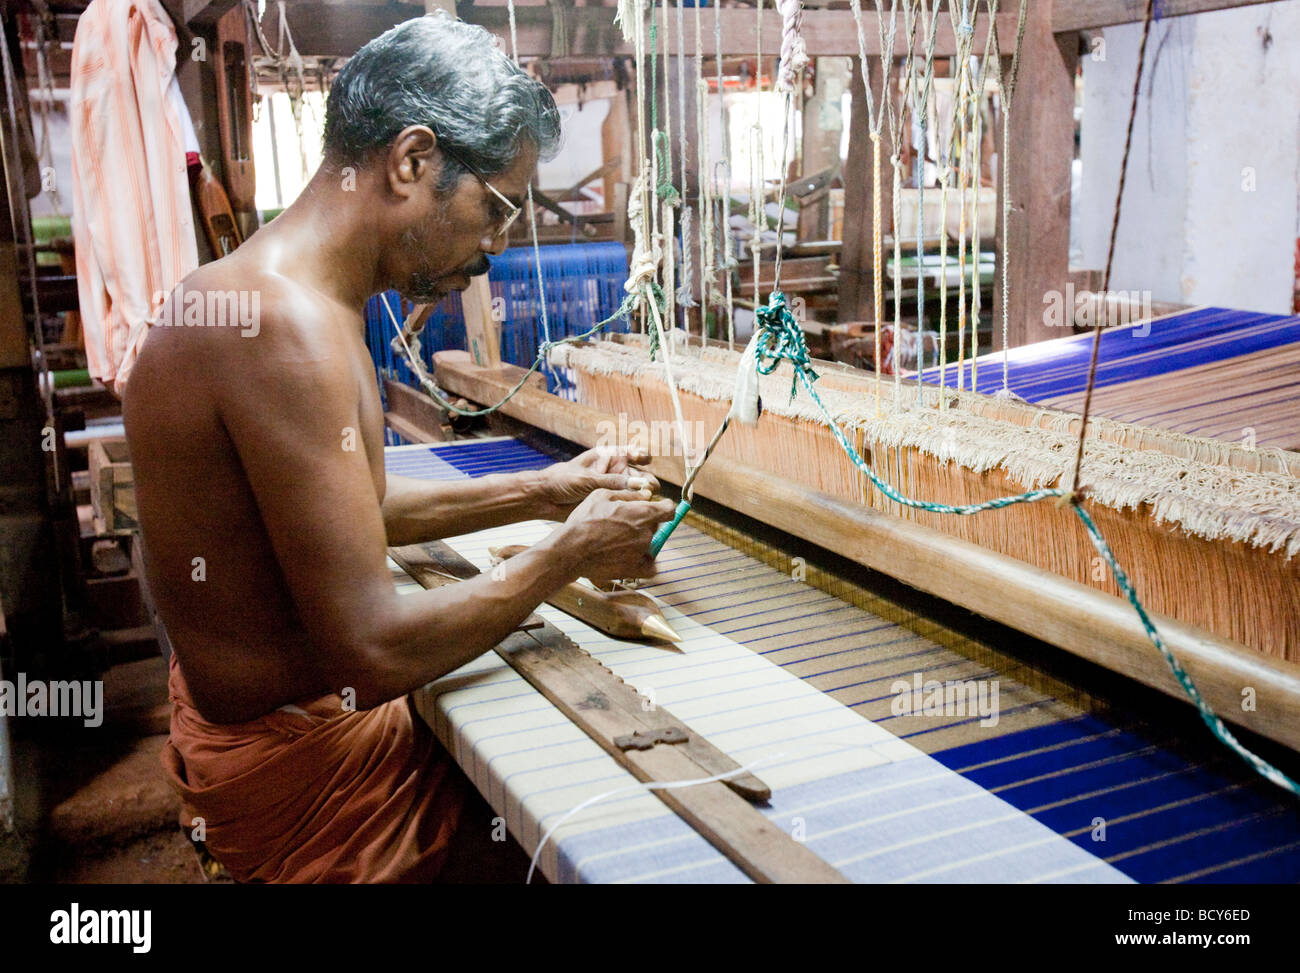 Indischer Mann arbeitet in einer Weberei Fabrik In nördlichen Kerala Indien Stockfoto